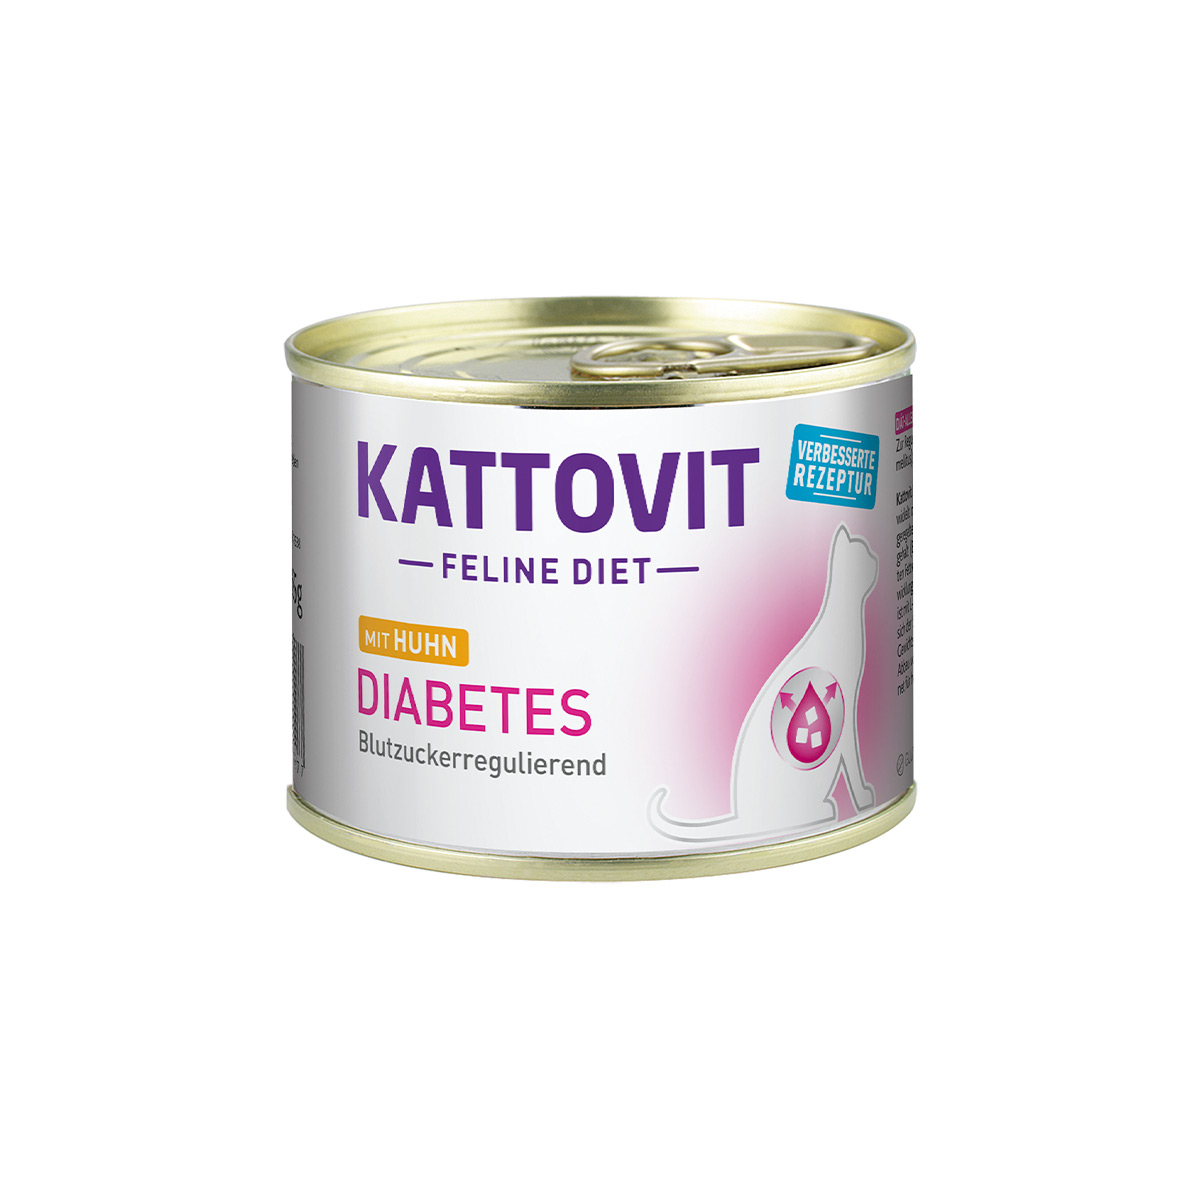 Kattovit Feline Diet Diabetes Huhn 12x185g